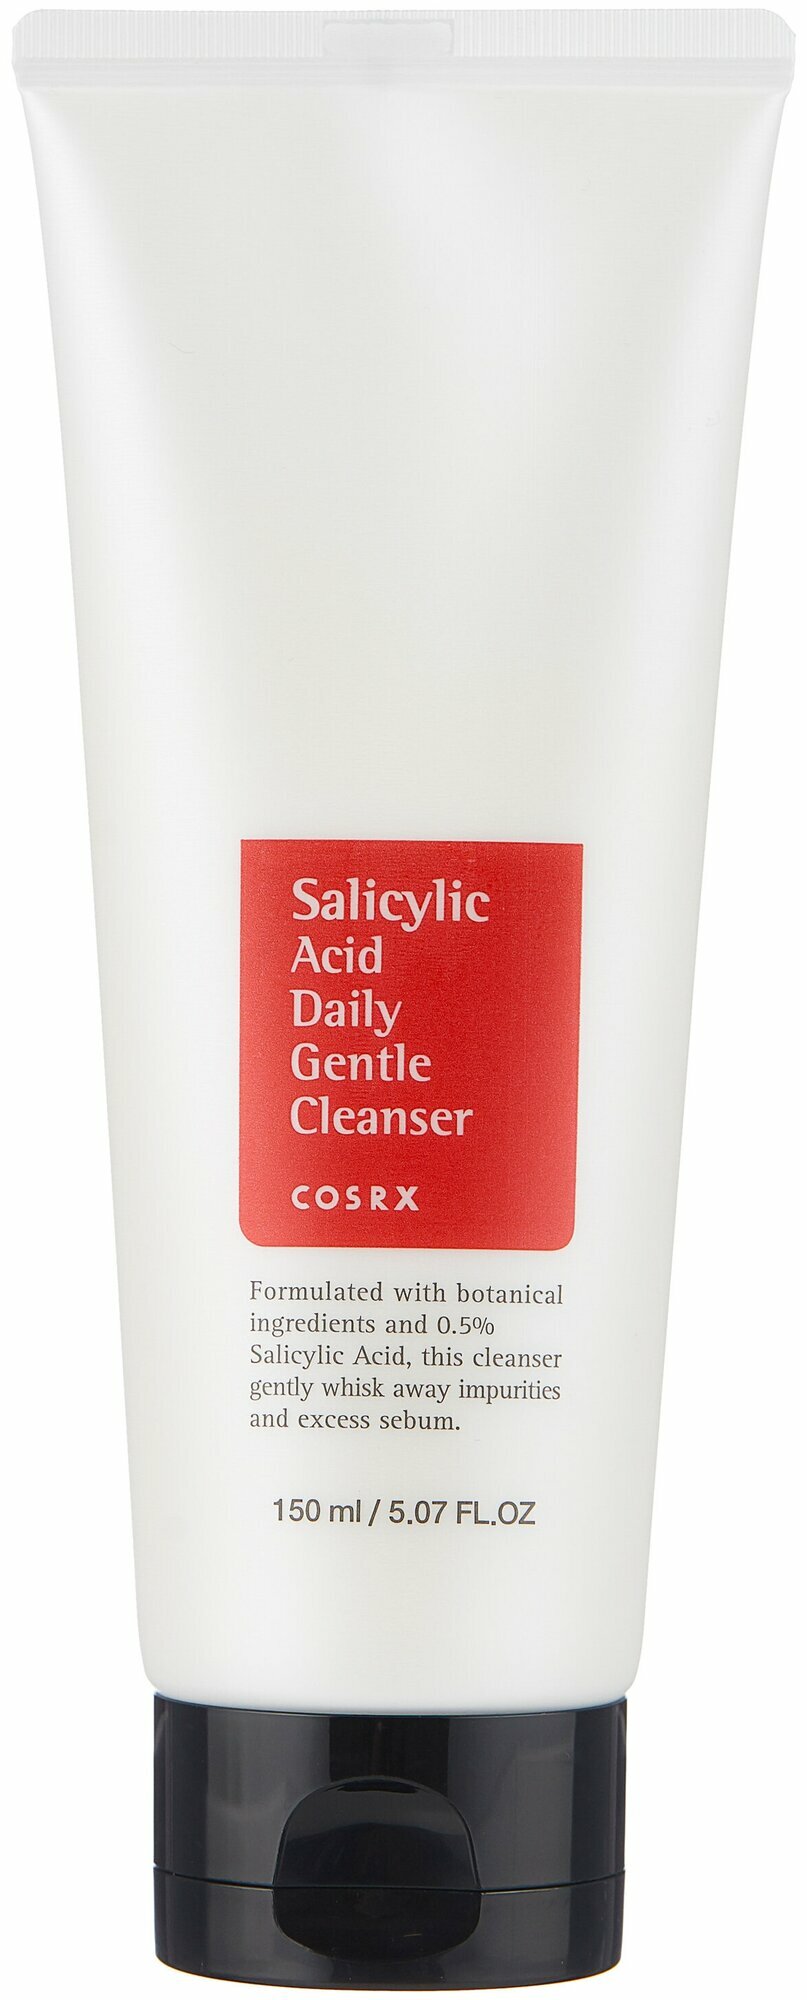 Пенка для умывания с салициловой кислотой | Cosrx Salicylic Acid Daily Gentle Cleanser 150ml